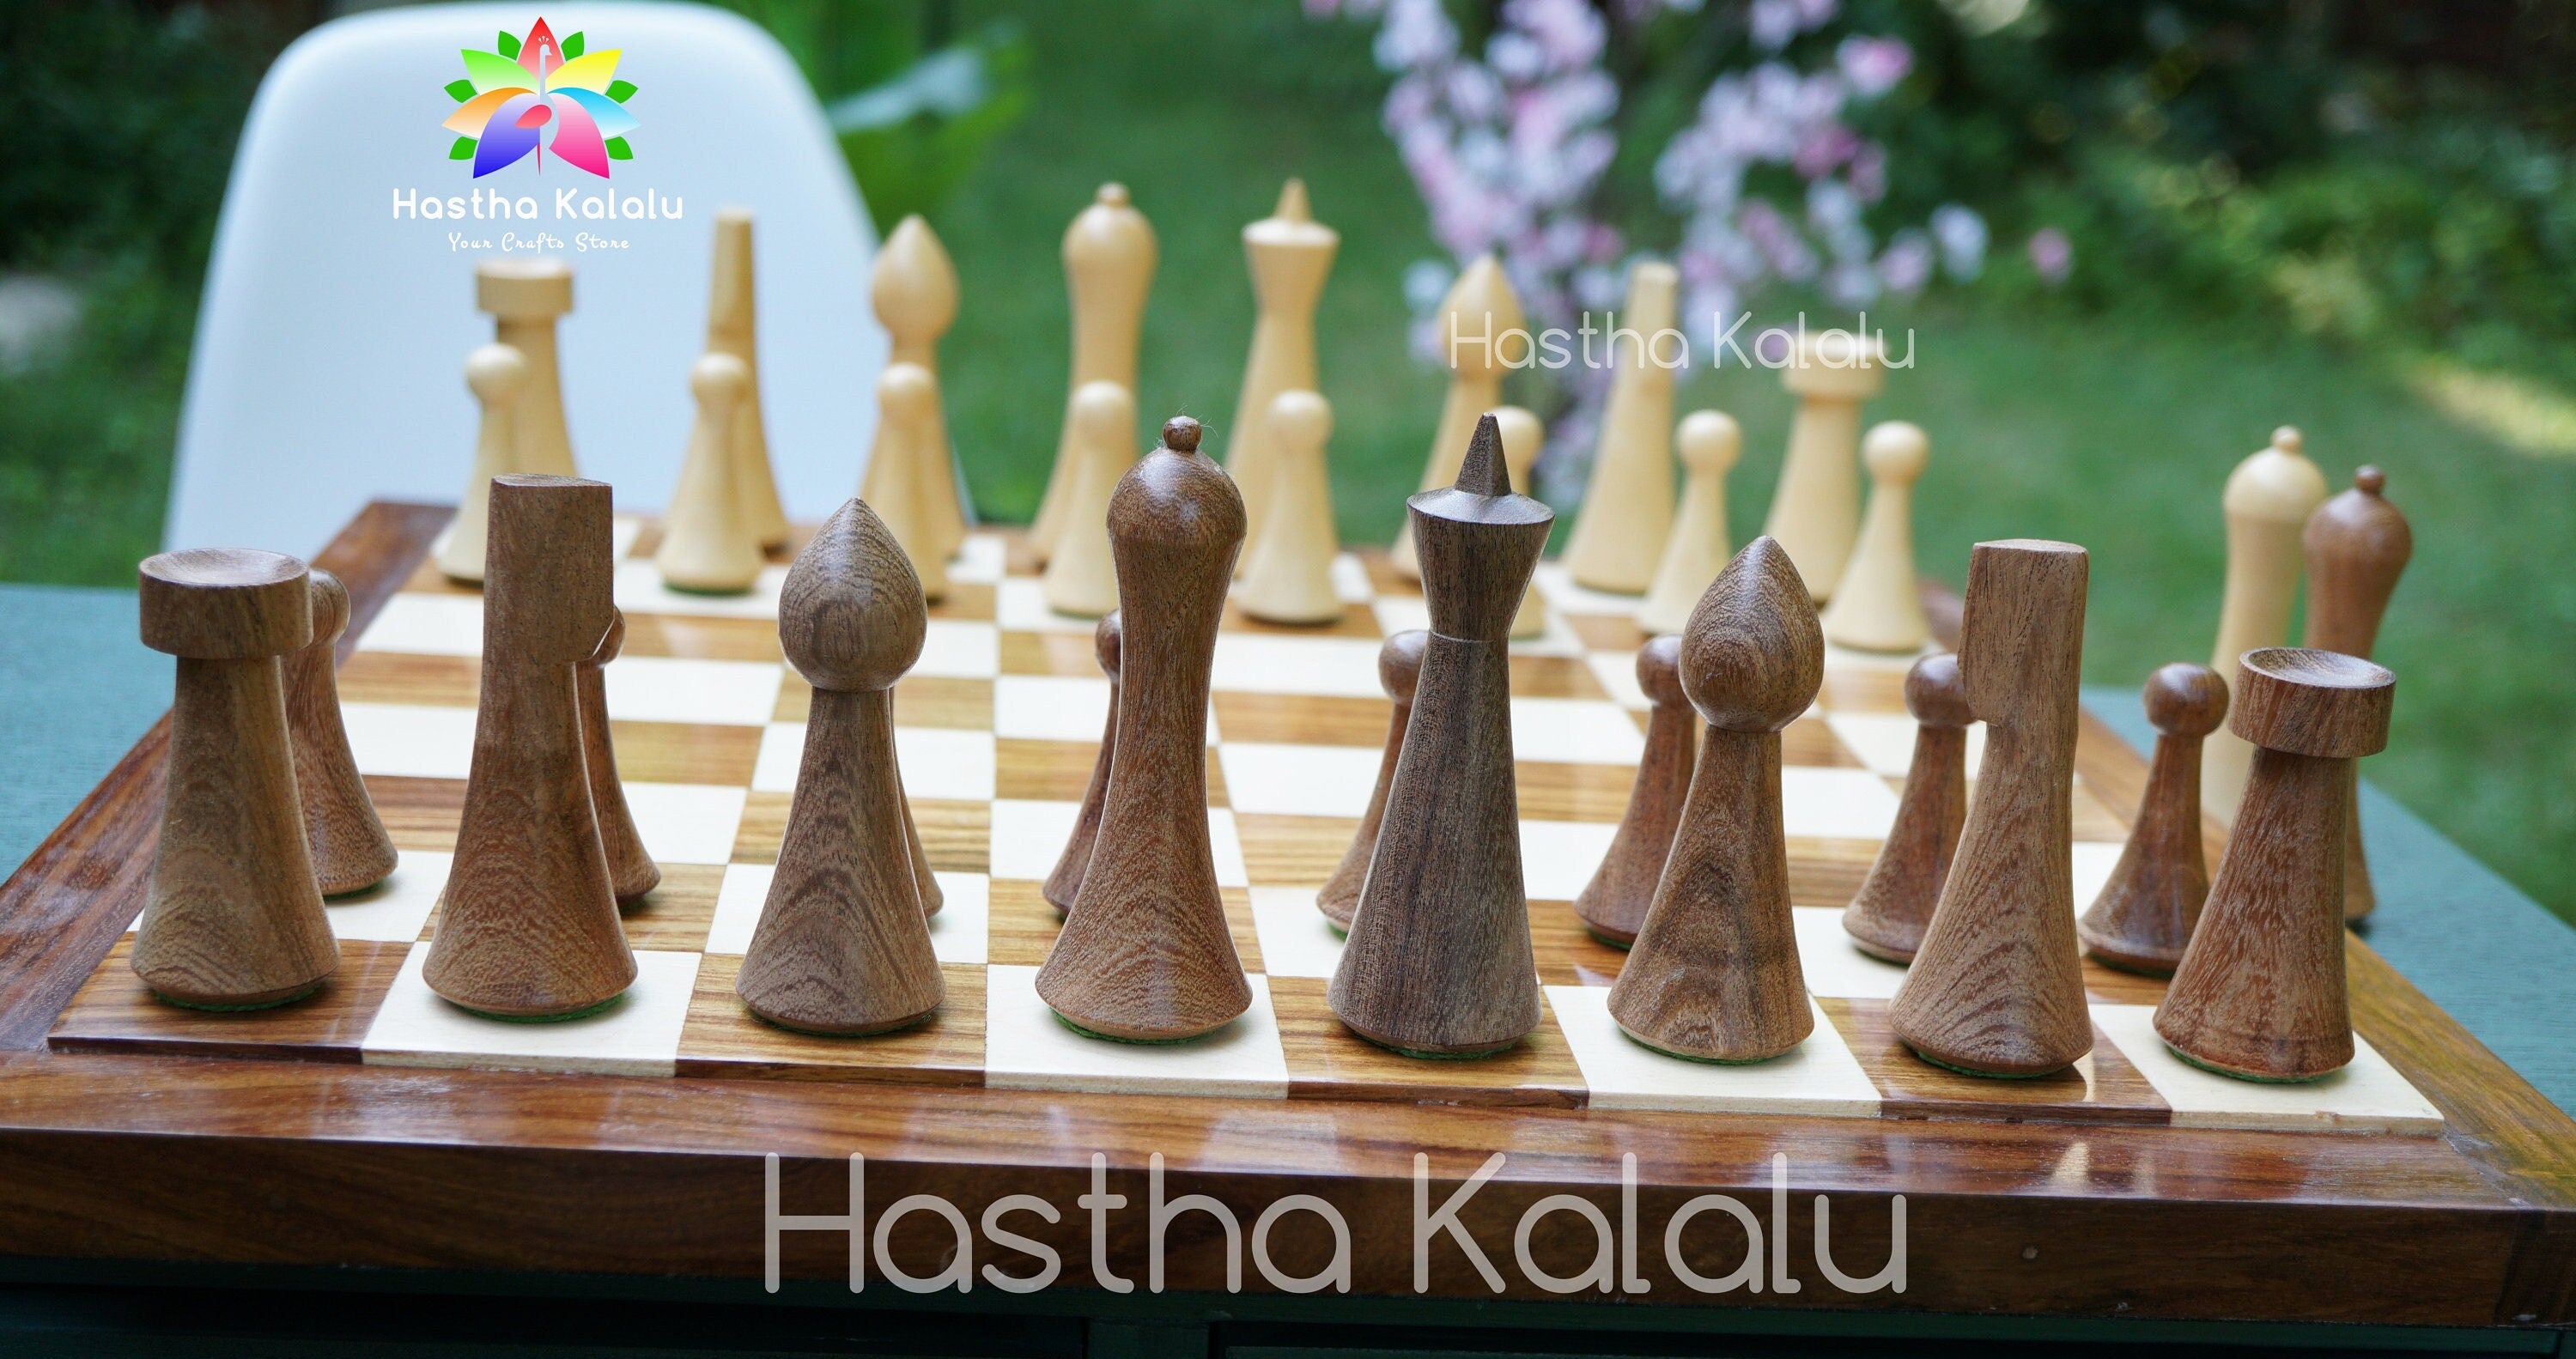 Jeu d'échecs combiné | Jeu d'échecs danois Herman Ohme de style minimaliste en palissandre indien avec planche en palissandre Endgrain